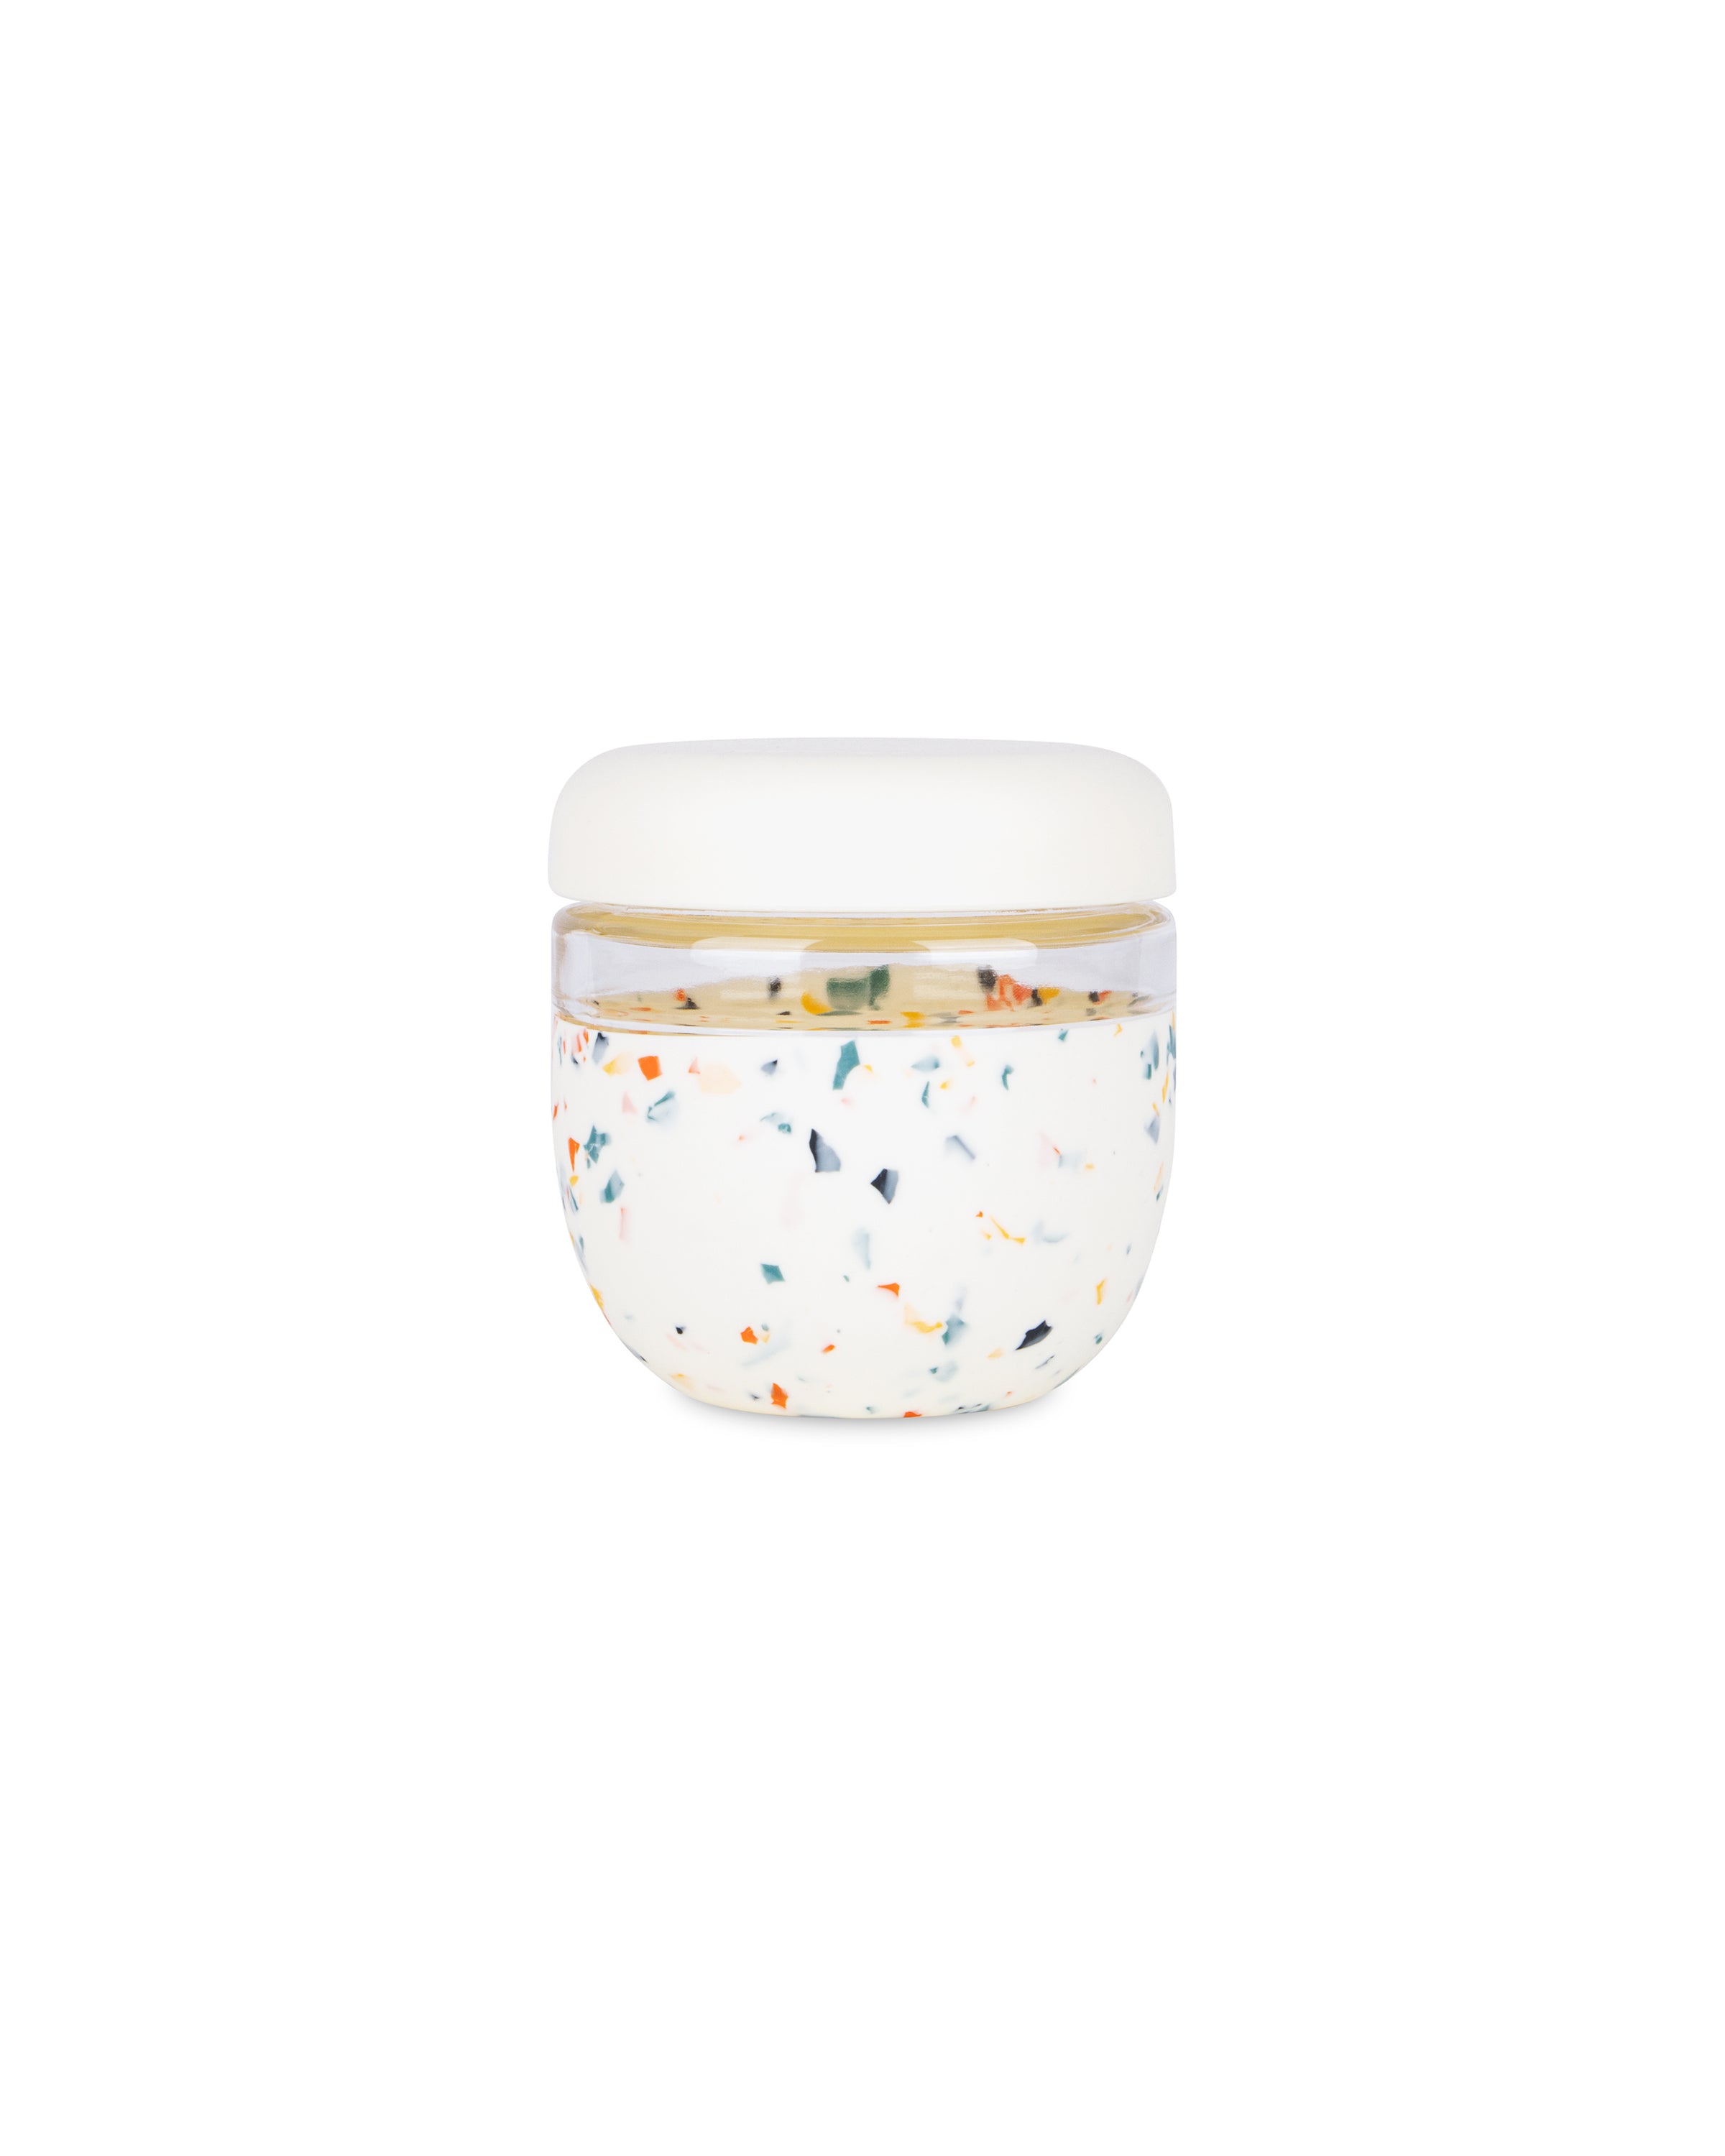 W&P Porter Bowl – Plastic – Cream